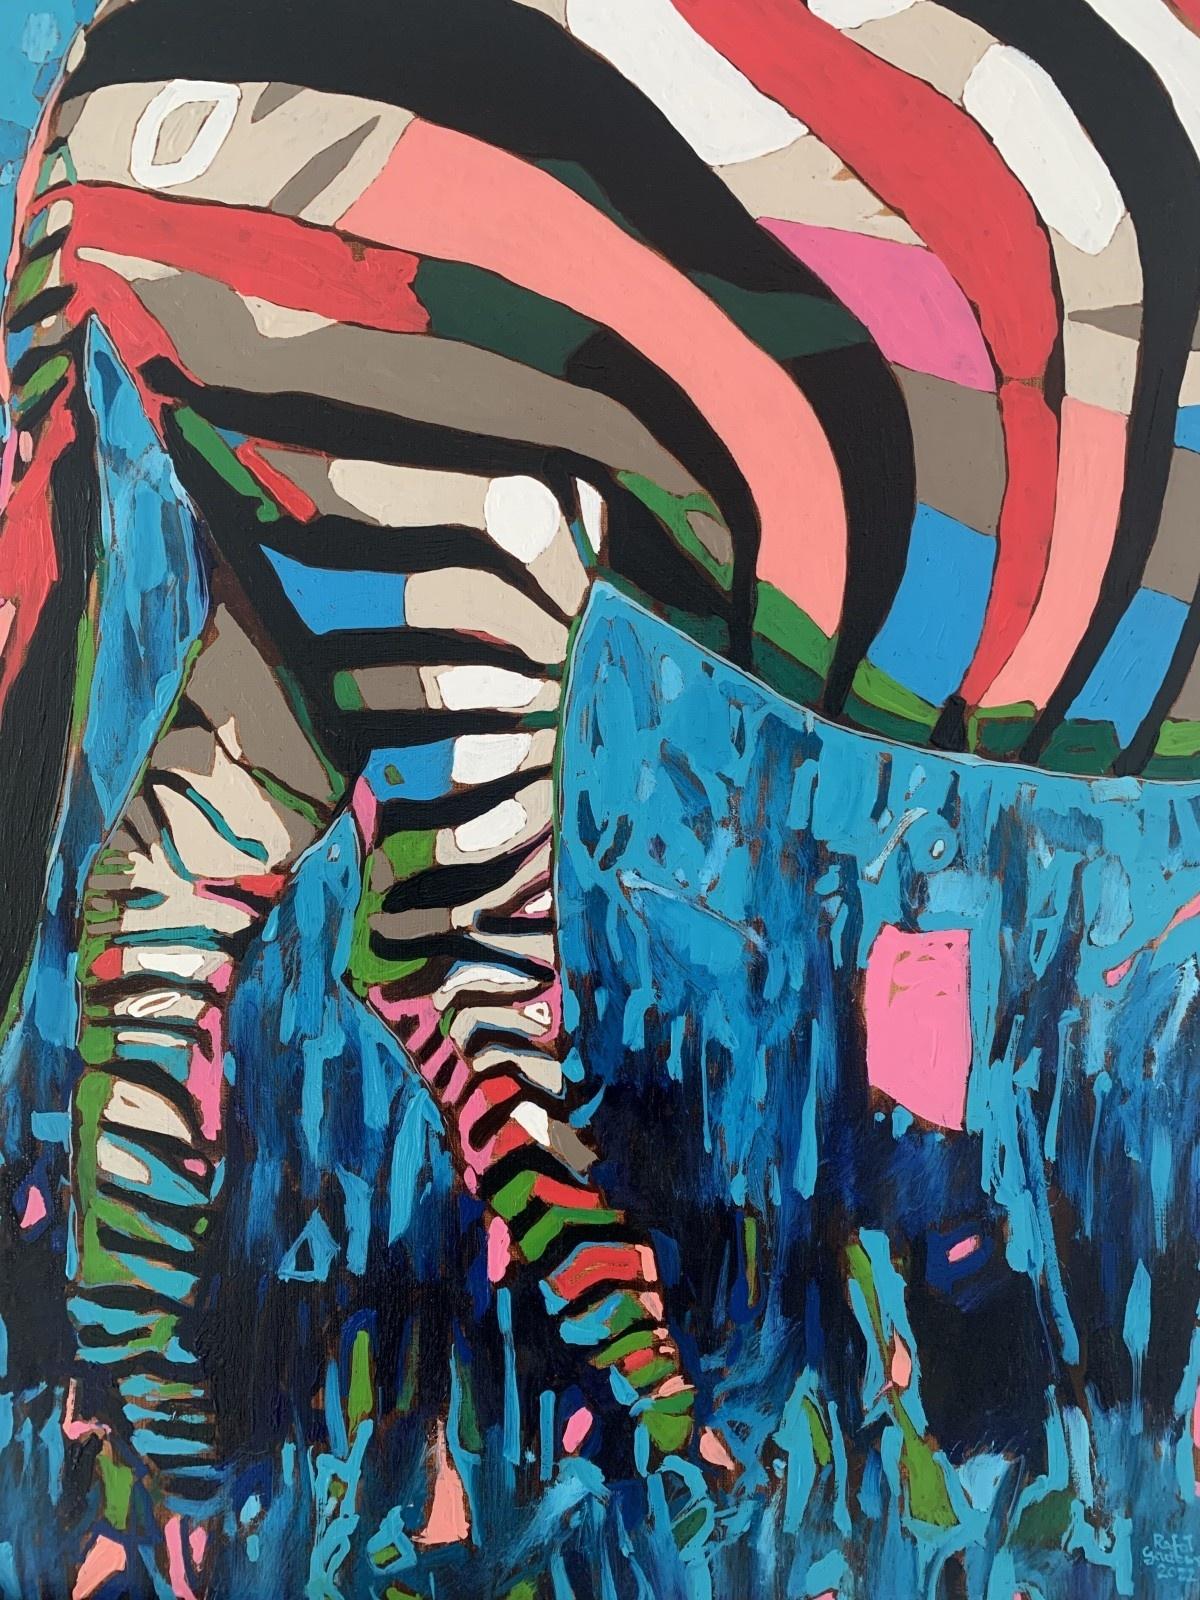 Zebras - Peinture à l'huile figurative contemporaine, Pop art, animaux, artiste polonais - Autres styles artistiques Painting par Rafał Gadowski